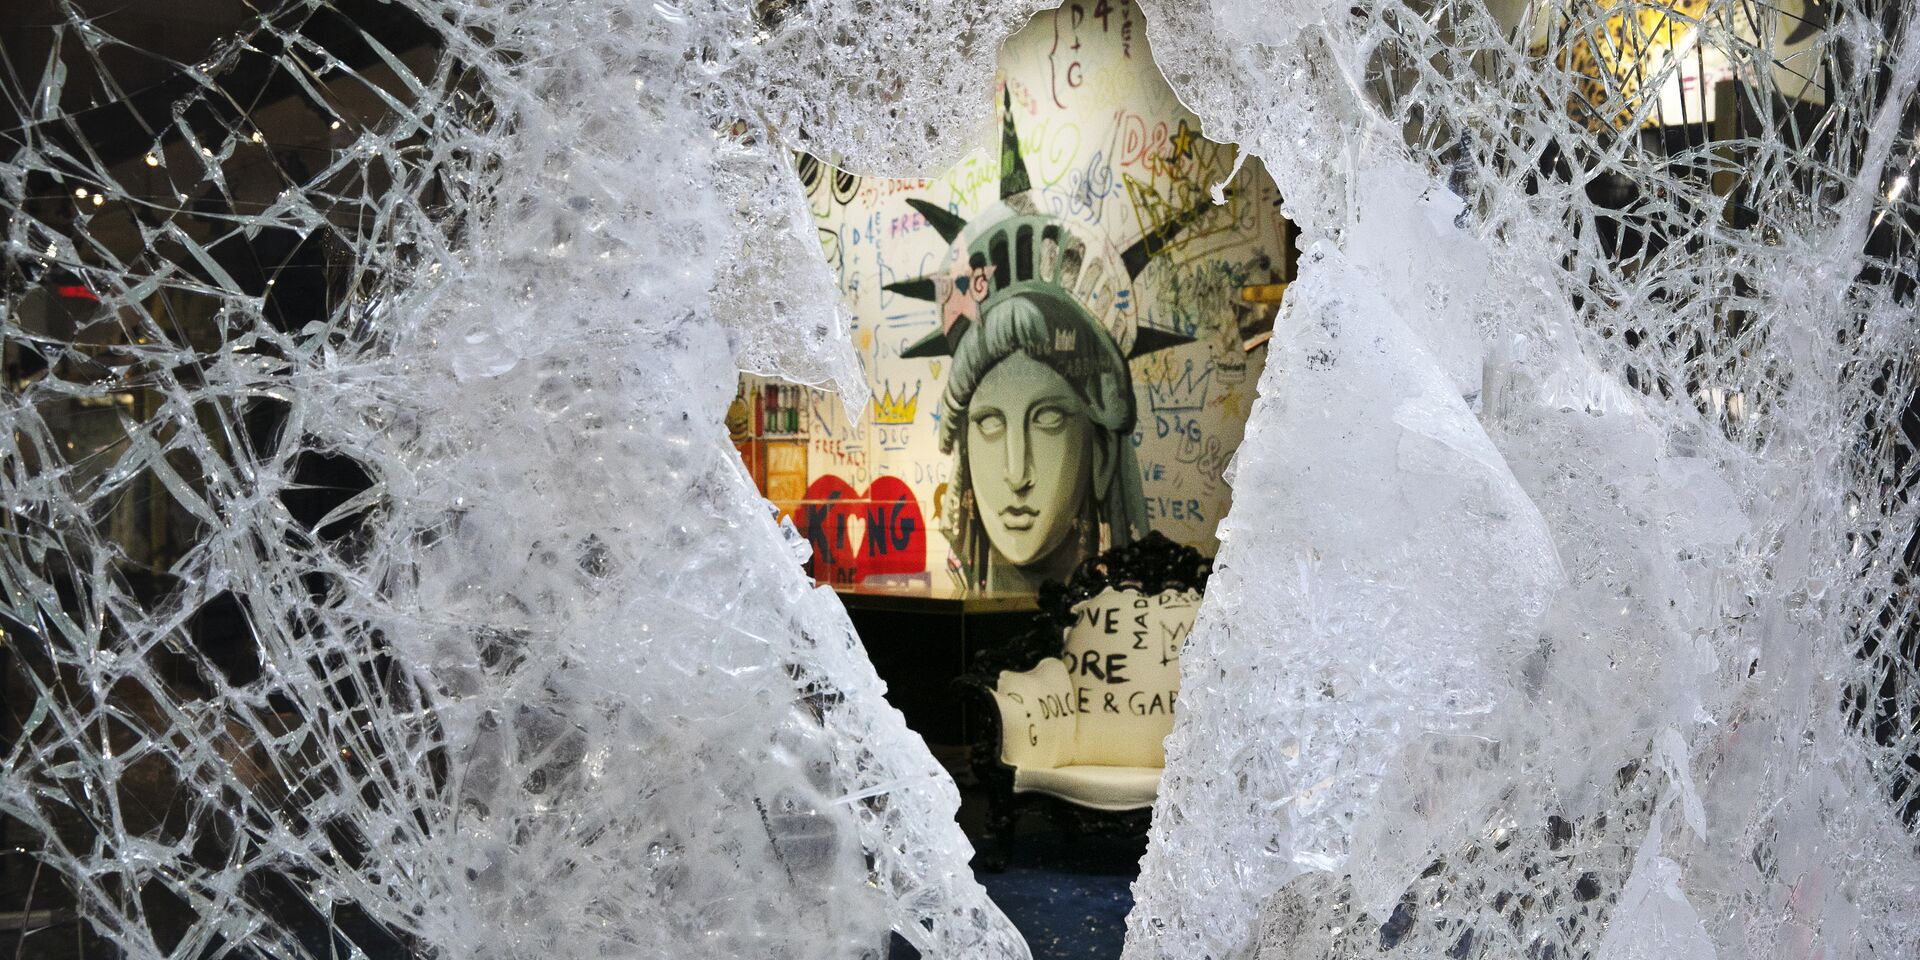 Граффити, изображающее лицо Статуи свободы, через разбитую витрину магазина в Нью-Йорке, США - ИноСМИ, 1920, 30.11.2022